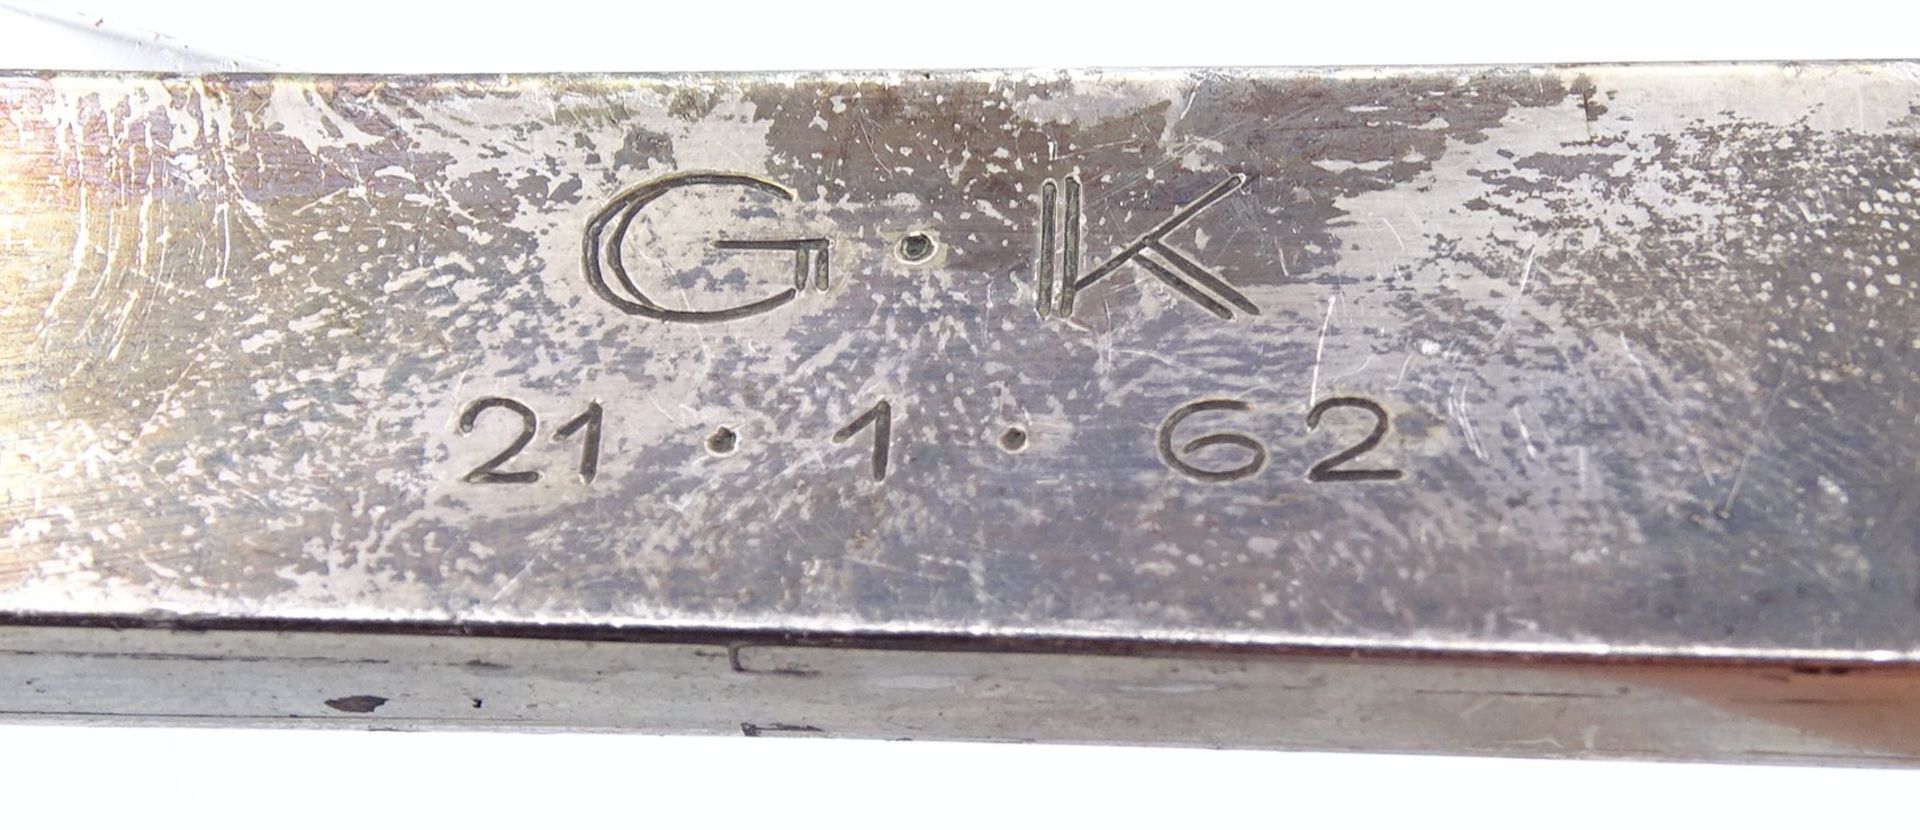 Zigarrenabschneider mit Silbermontur - Sterlingsilber, Gravur G.K. 21.1.62, L. 16cm - Image 3 of 3